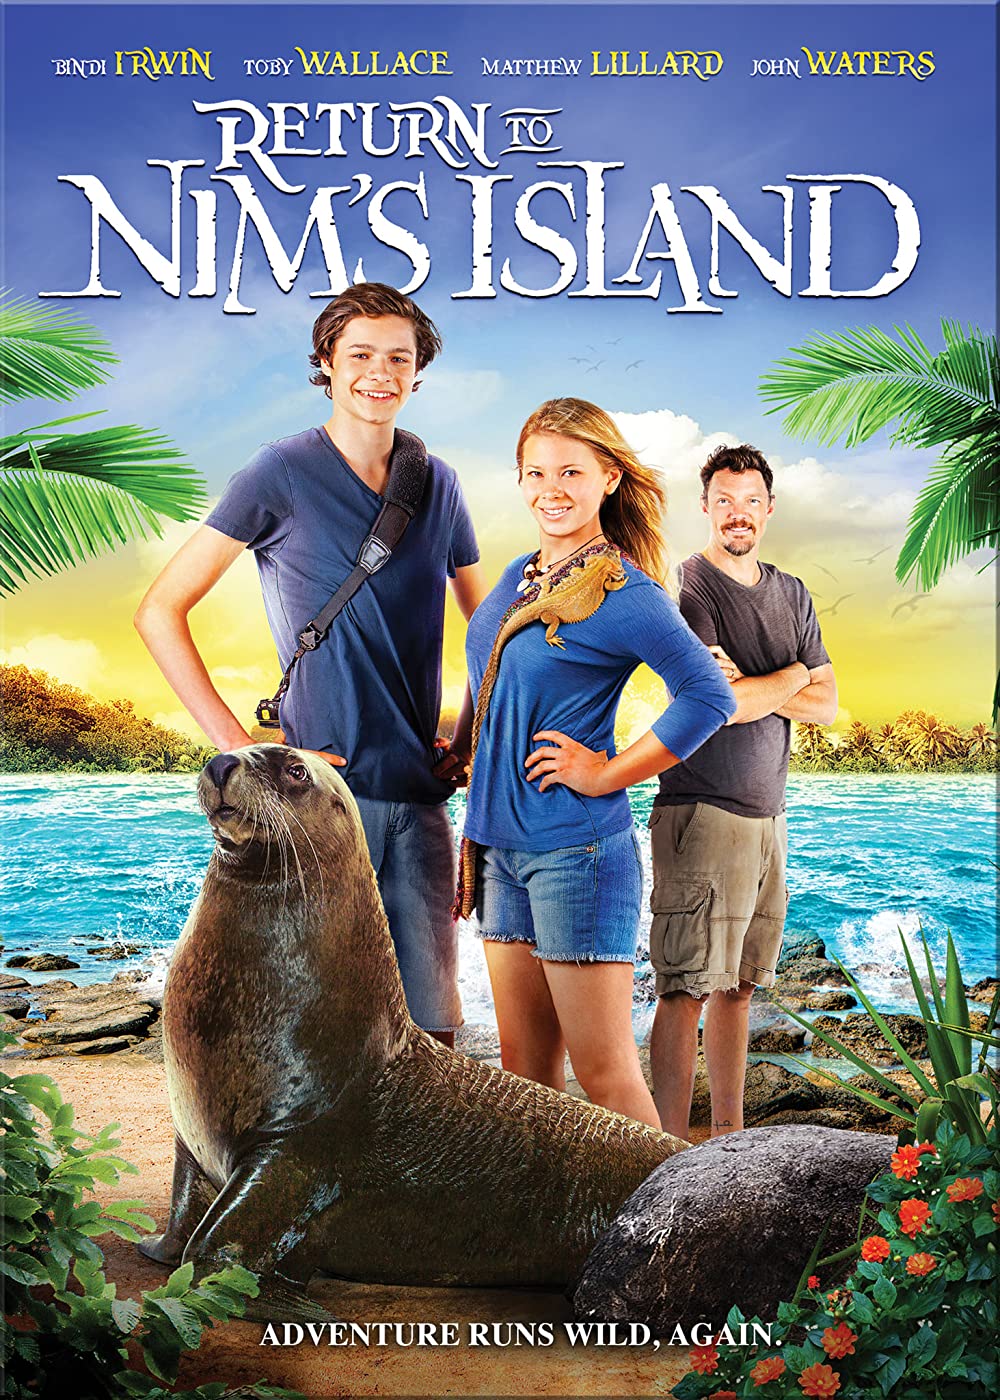 ดูหนังออนไลน์ฟรี RETURN TO NIM S ISLAND (2013) นิม ไอแลนด์ 2 ผจญภัยเกาะหรรษา